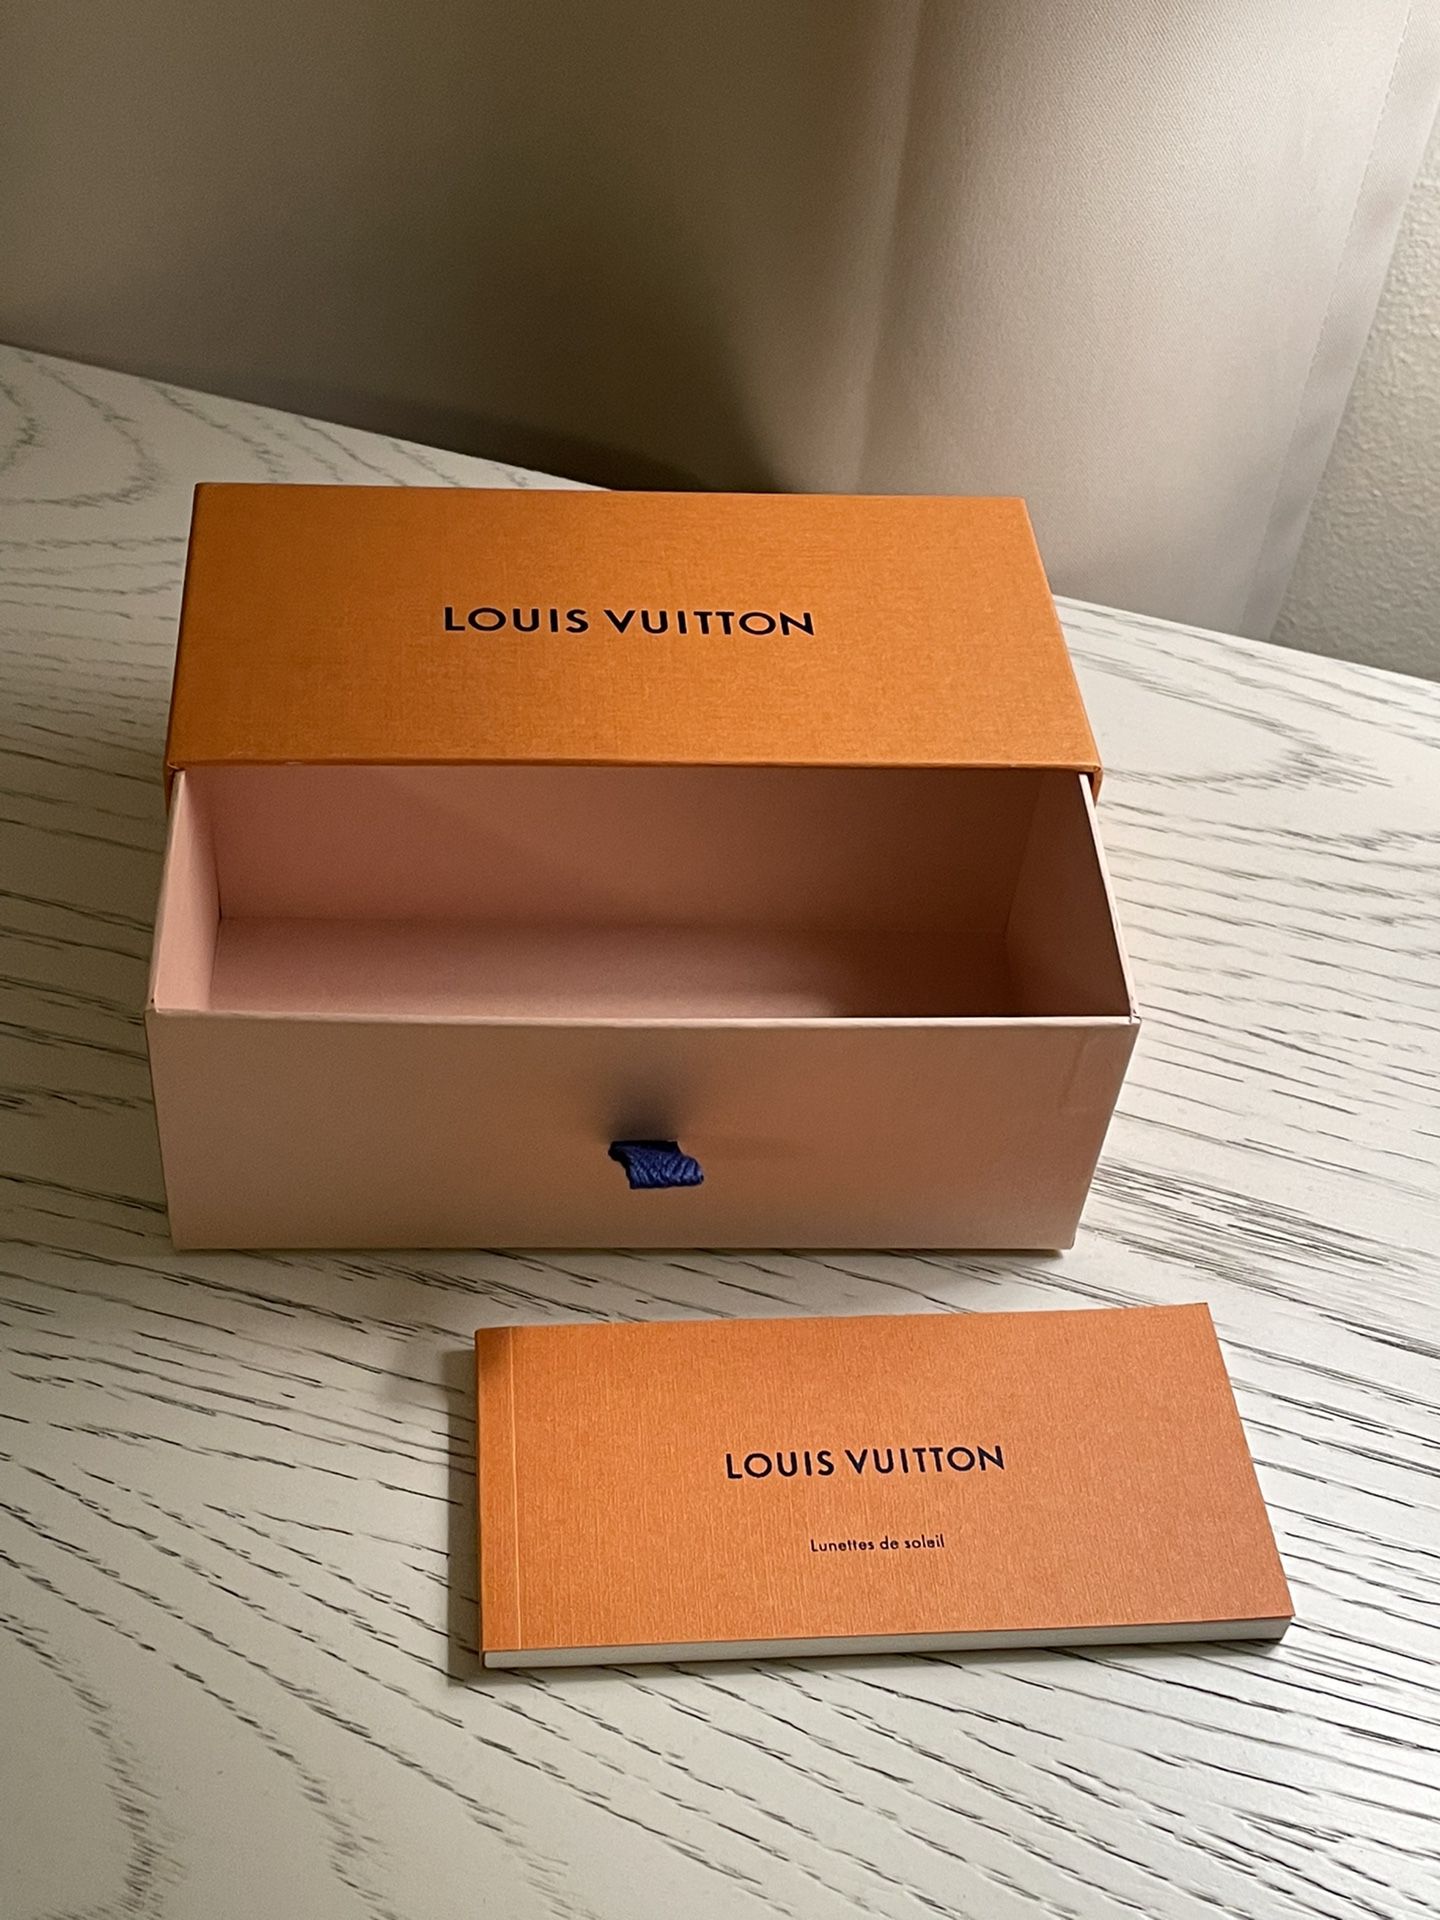 Louis Vuitton Sunglasses Box for Sale in Pompano Beach, FL - OfferUp